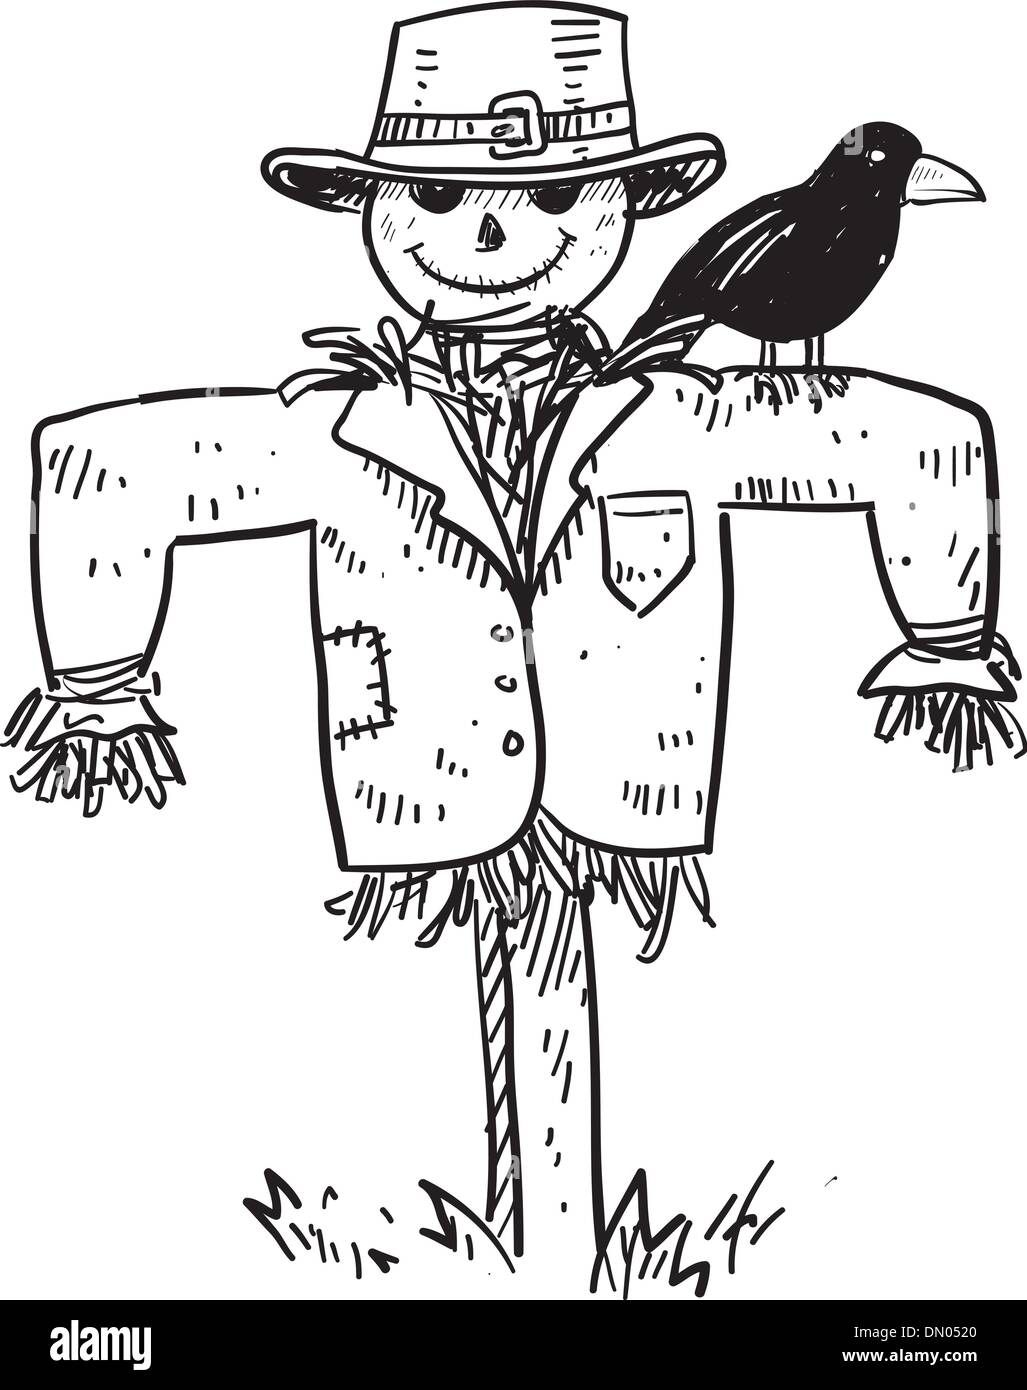 Scarecrow vector Stock Vector